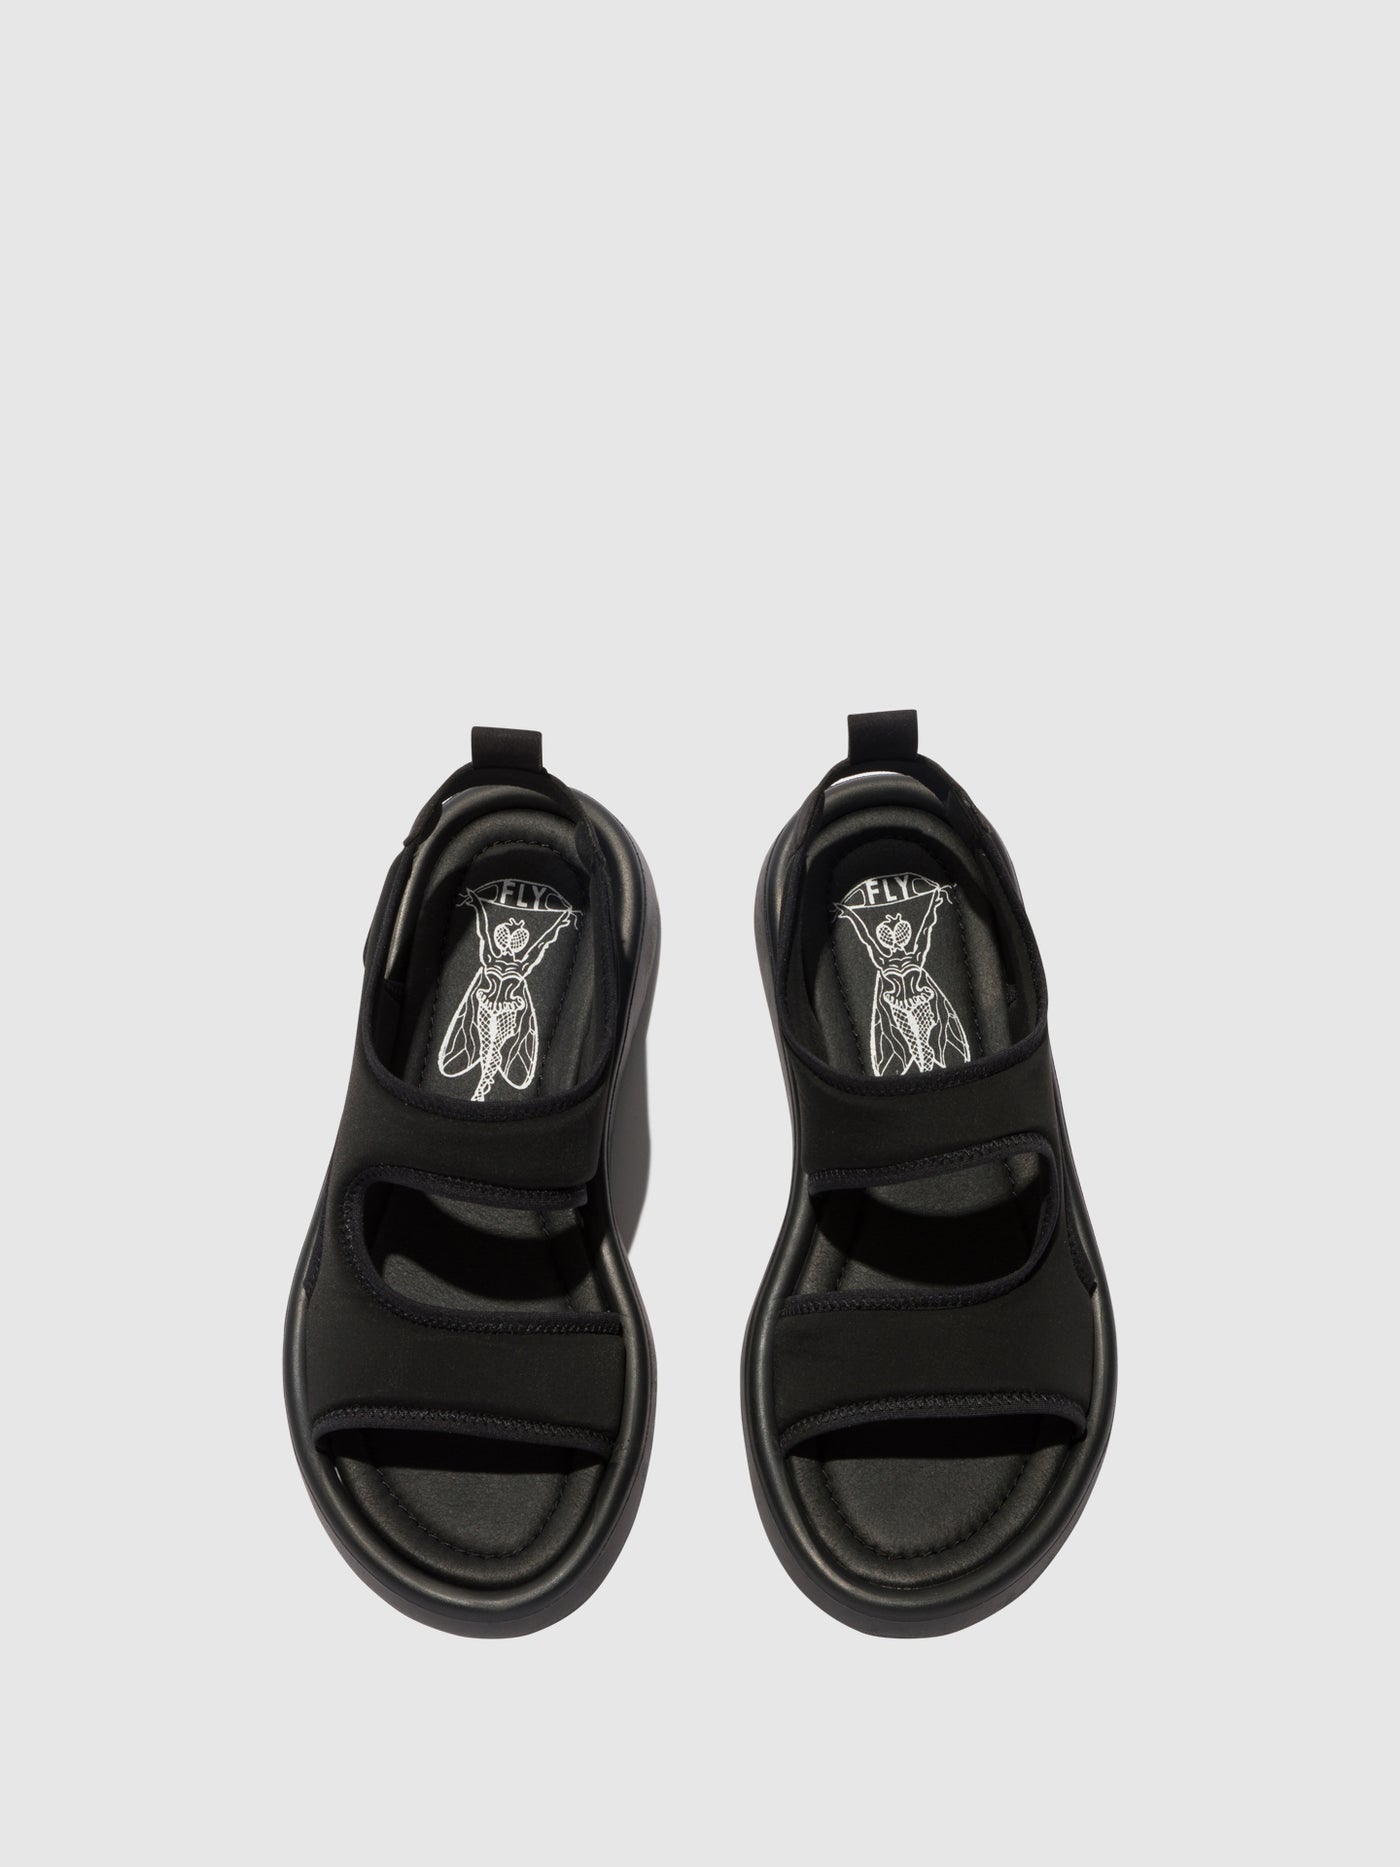 Sling-Back Sandals TREQ930FLY BLACK